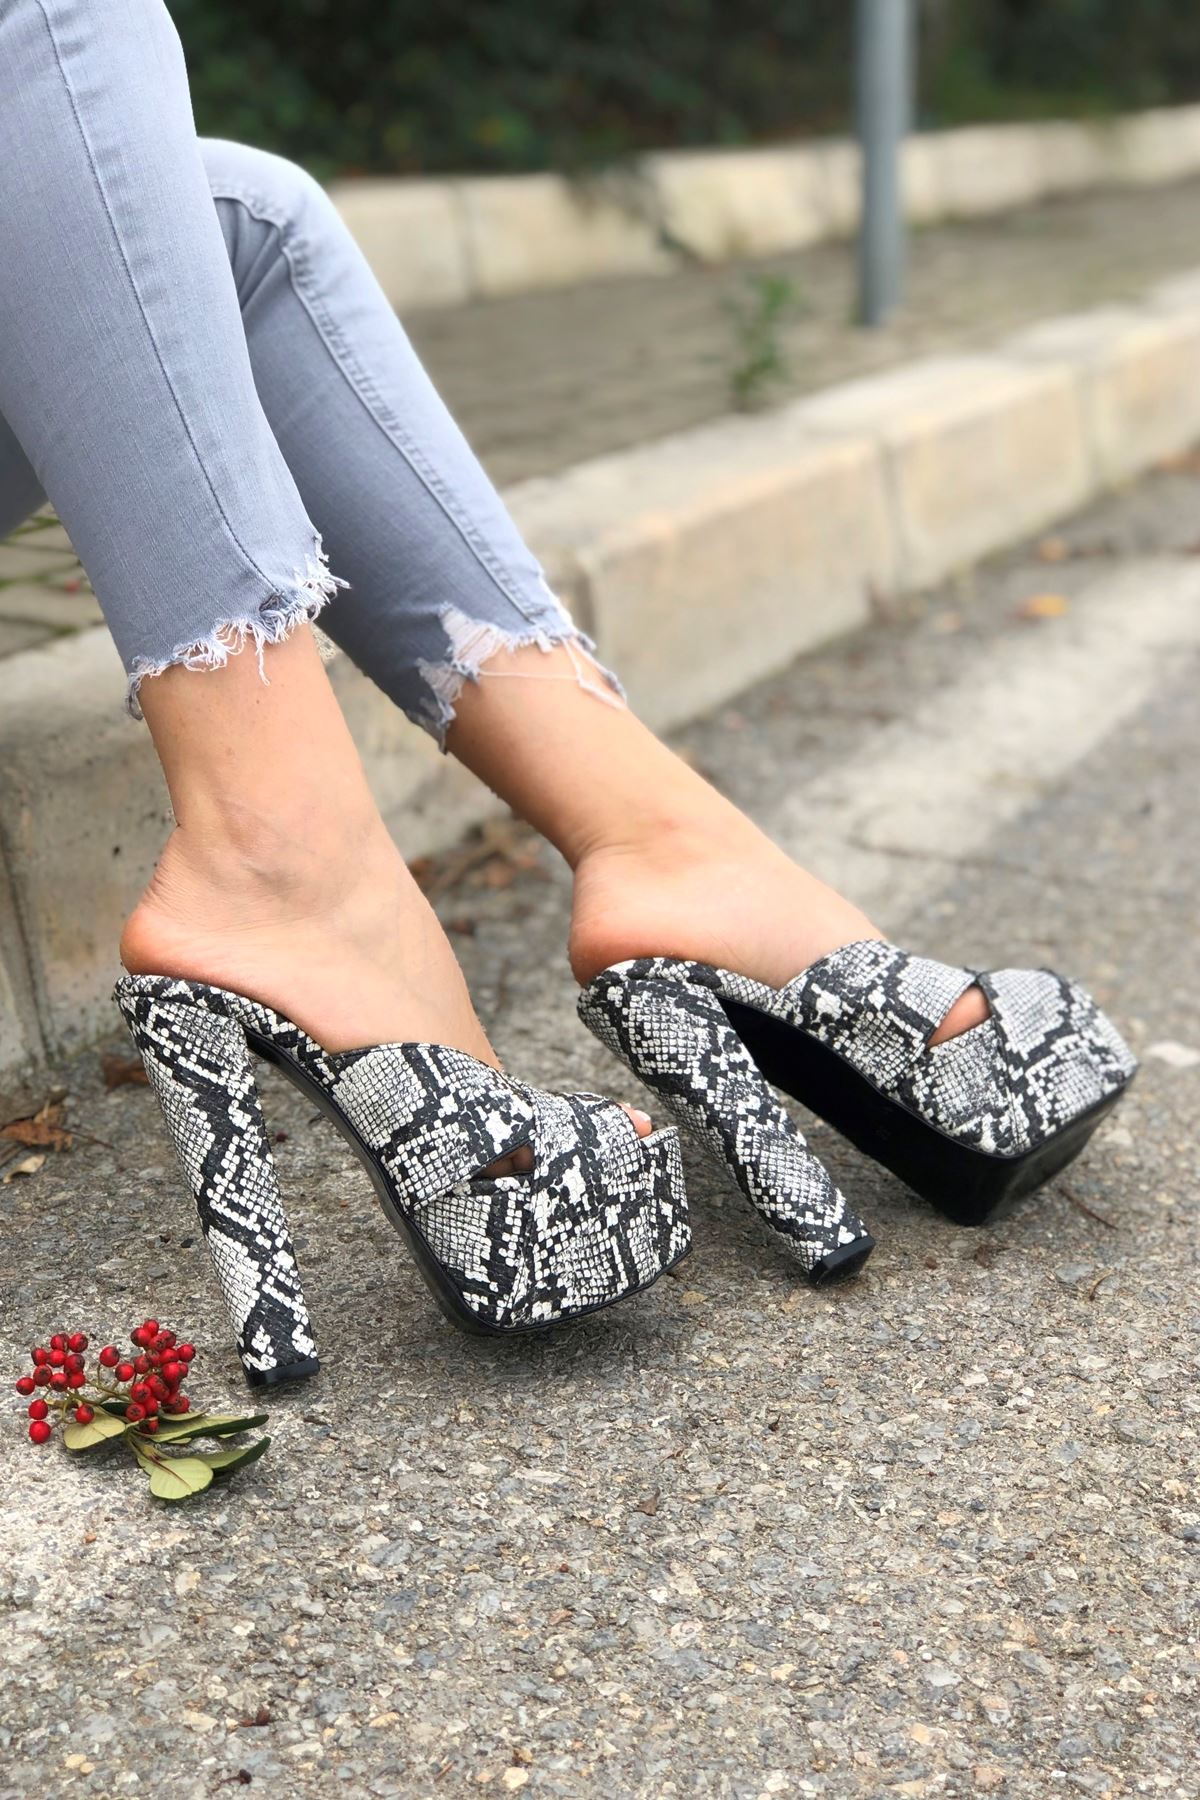 Mulan Siyah - Beyaz Yılan  Kadın Yüksek Topuklu Ayakkabı